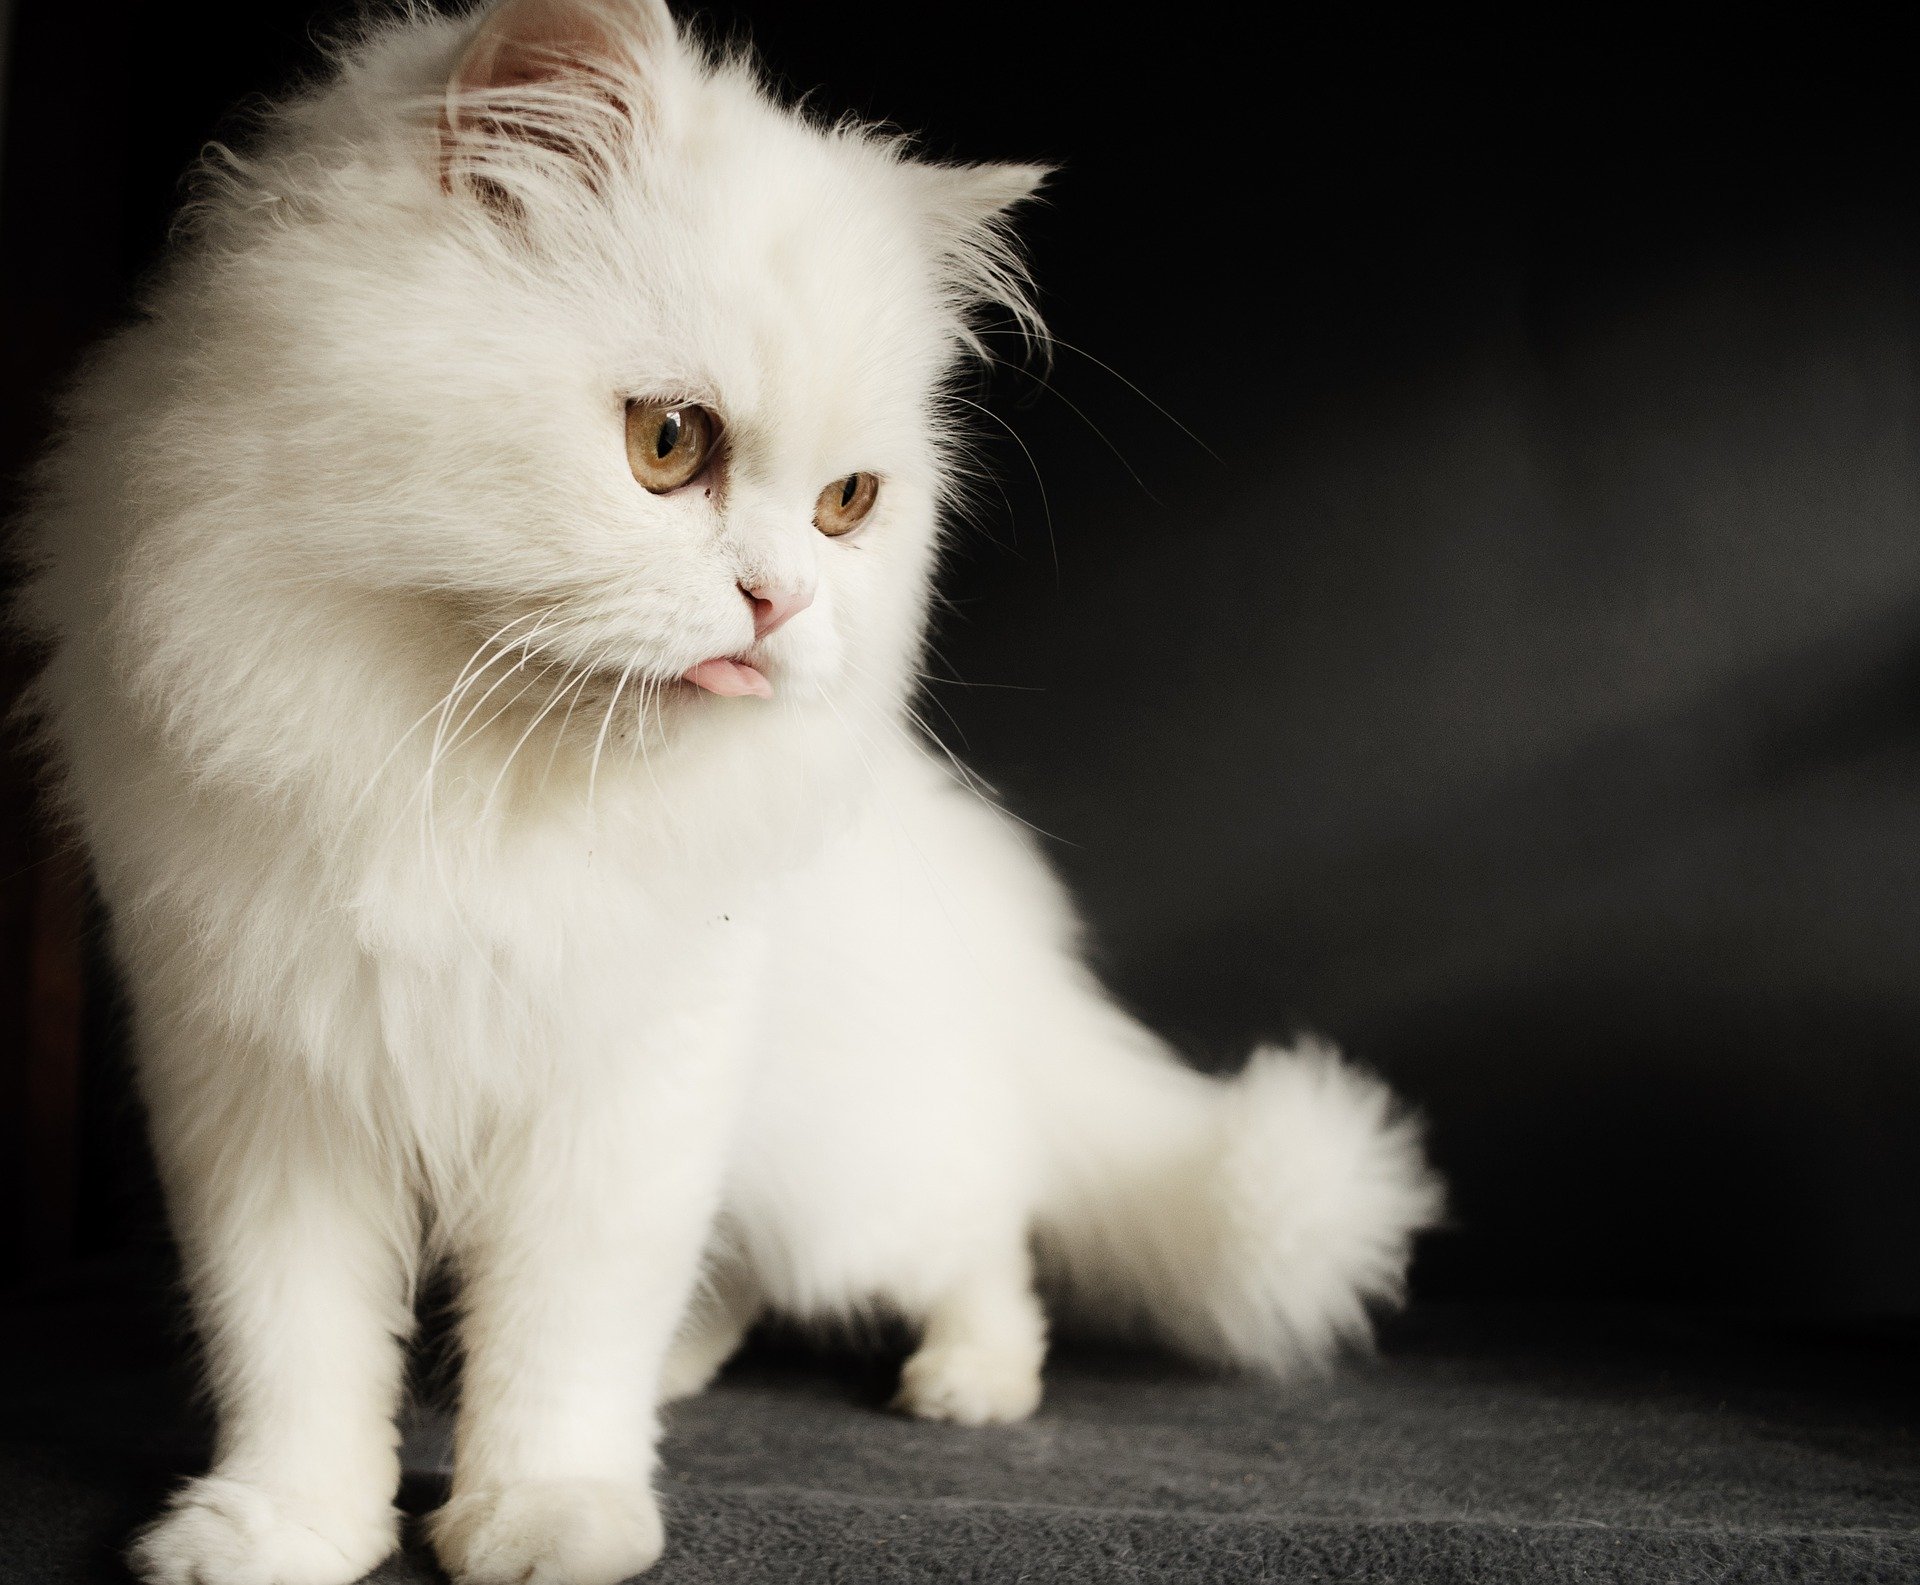  القط الفارسي(قط شيرازي)  Persian cat